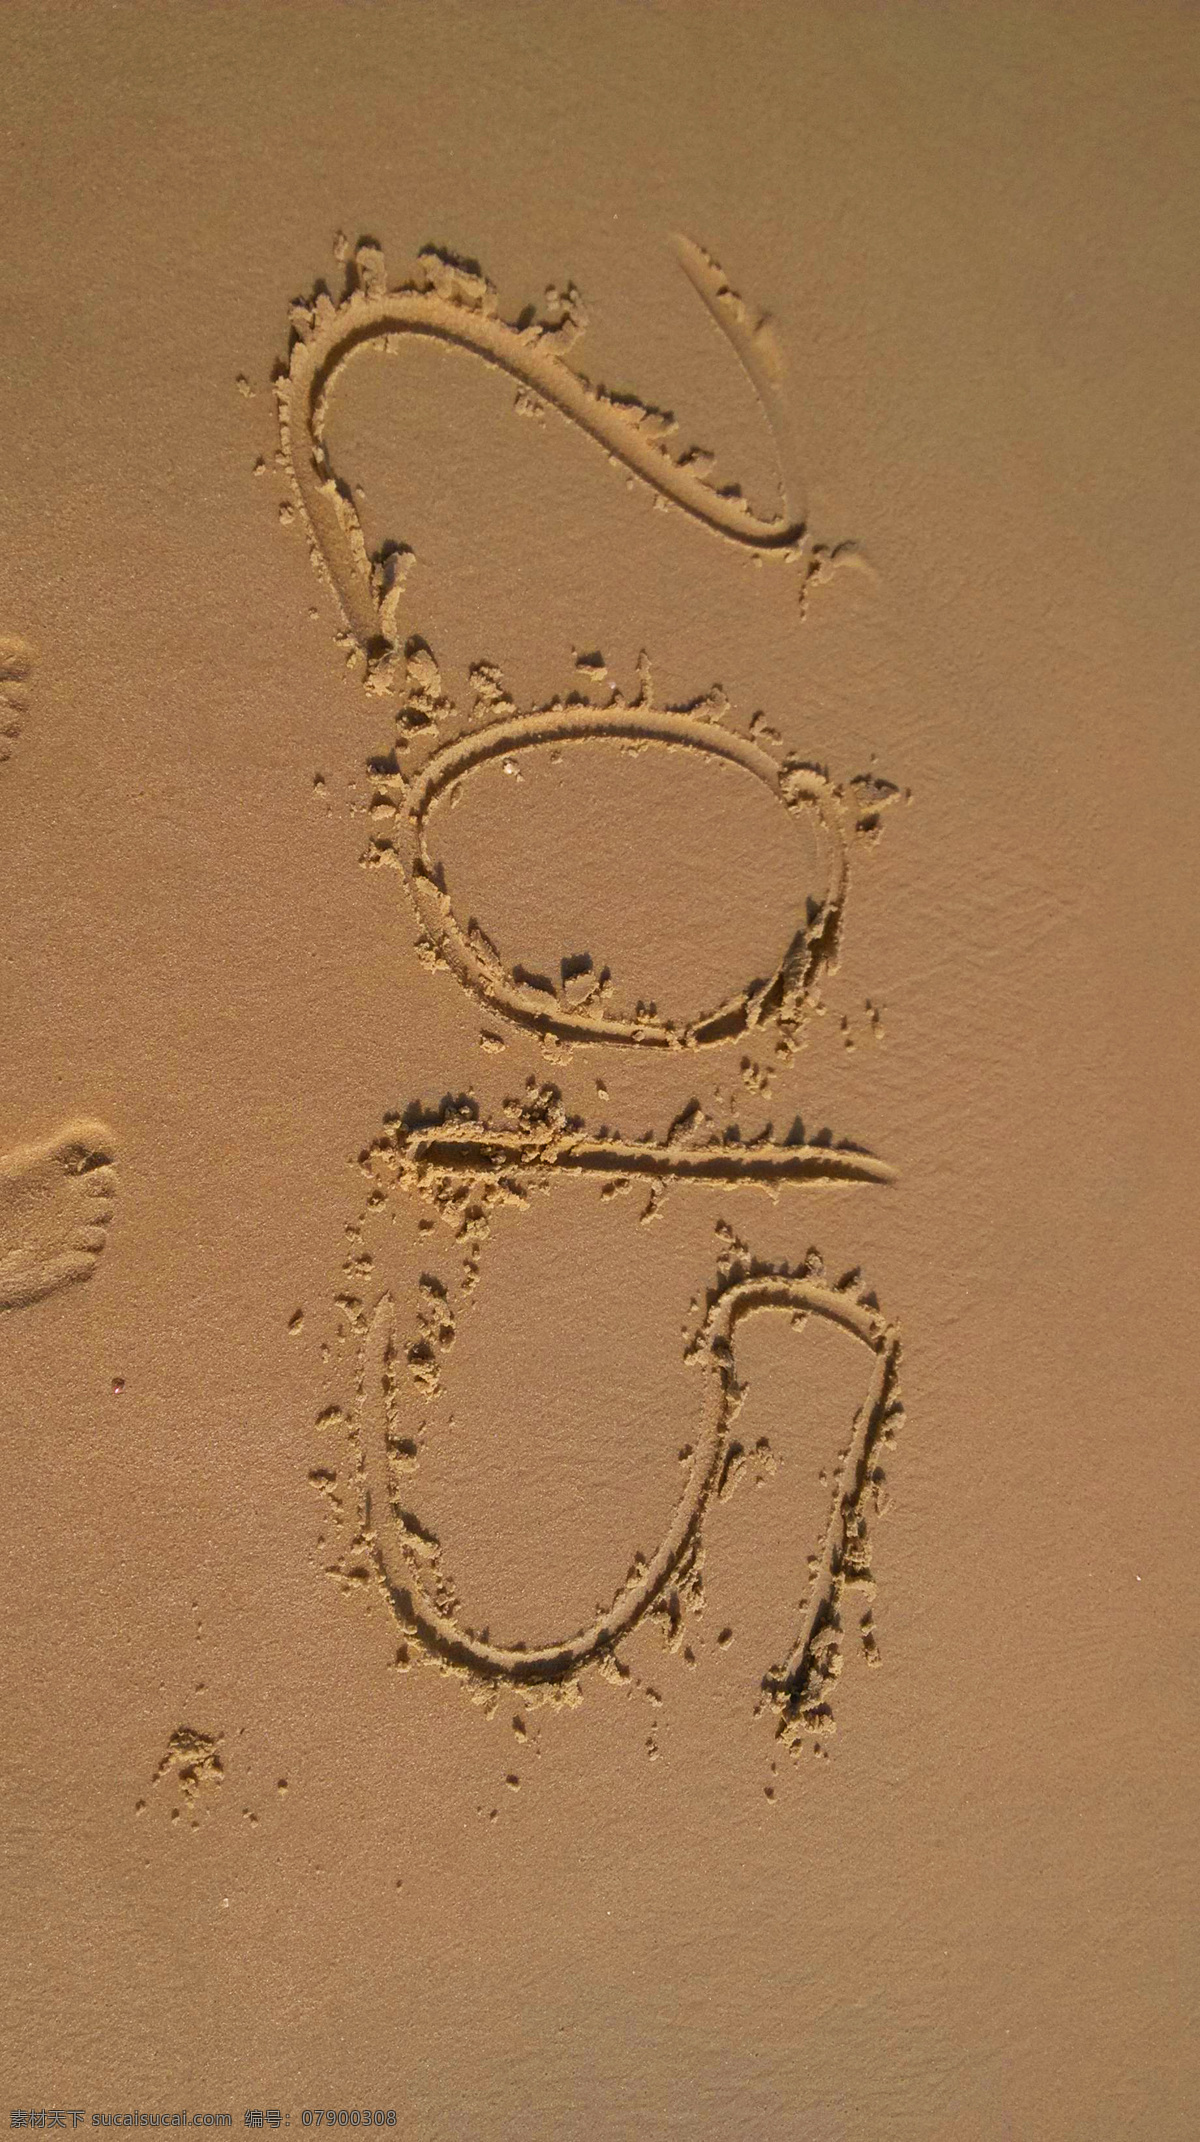 大海 海浪 海边 沙滩 海风 浪花 大梅沙 海燕 海景 阳光 海滩 海岸线 2015 书法 字体 创意 自然景观 山水风景 棕色